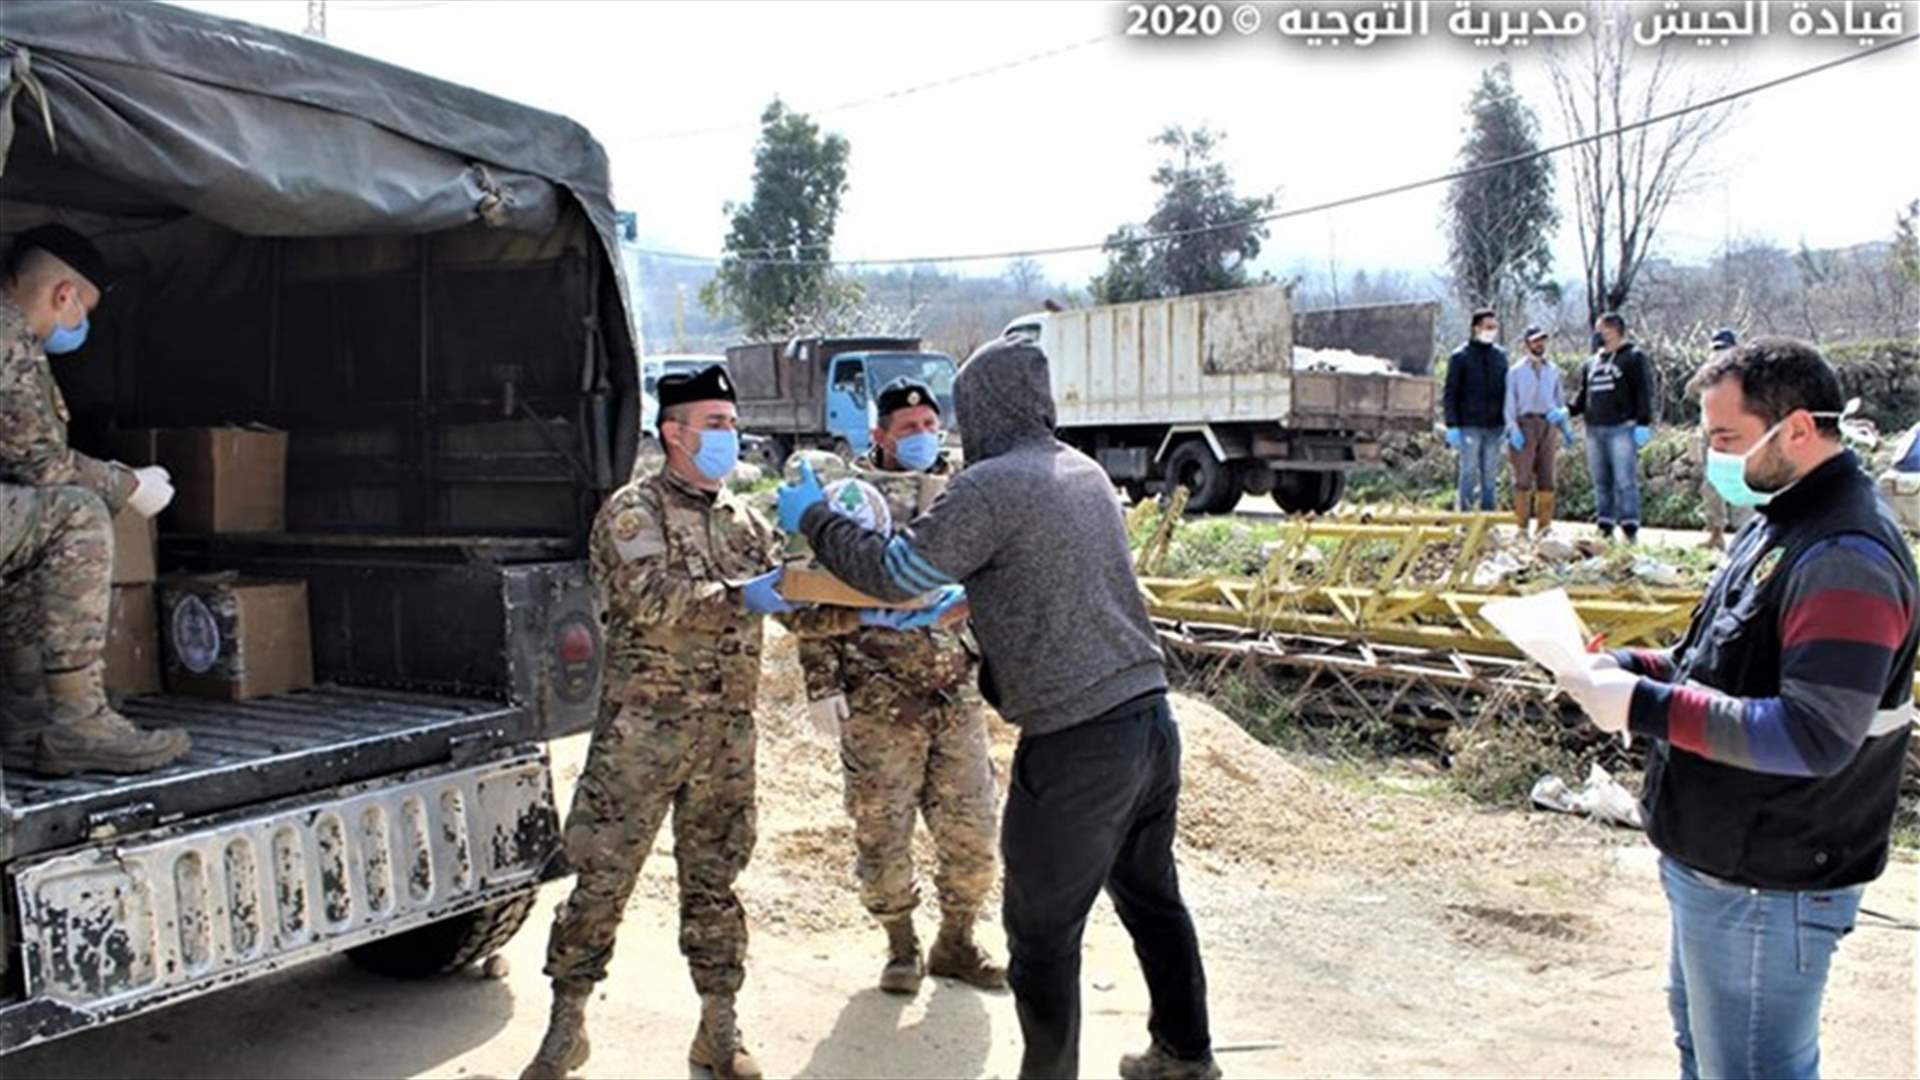 الجيش وزع حصصا غذائية في طرابلس وببنين وفنيدق